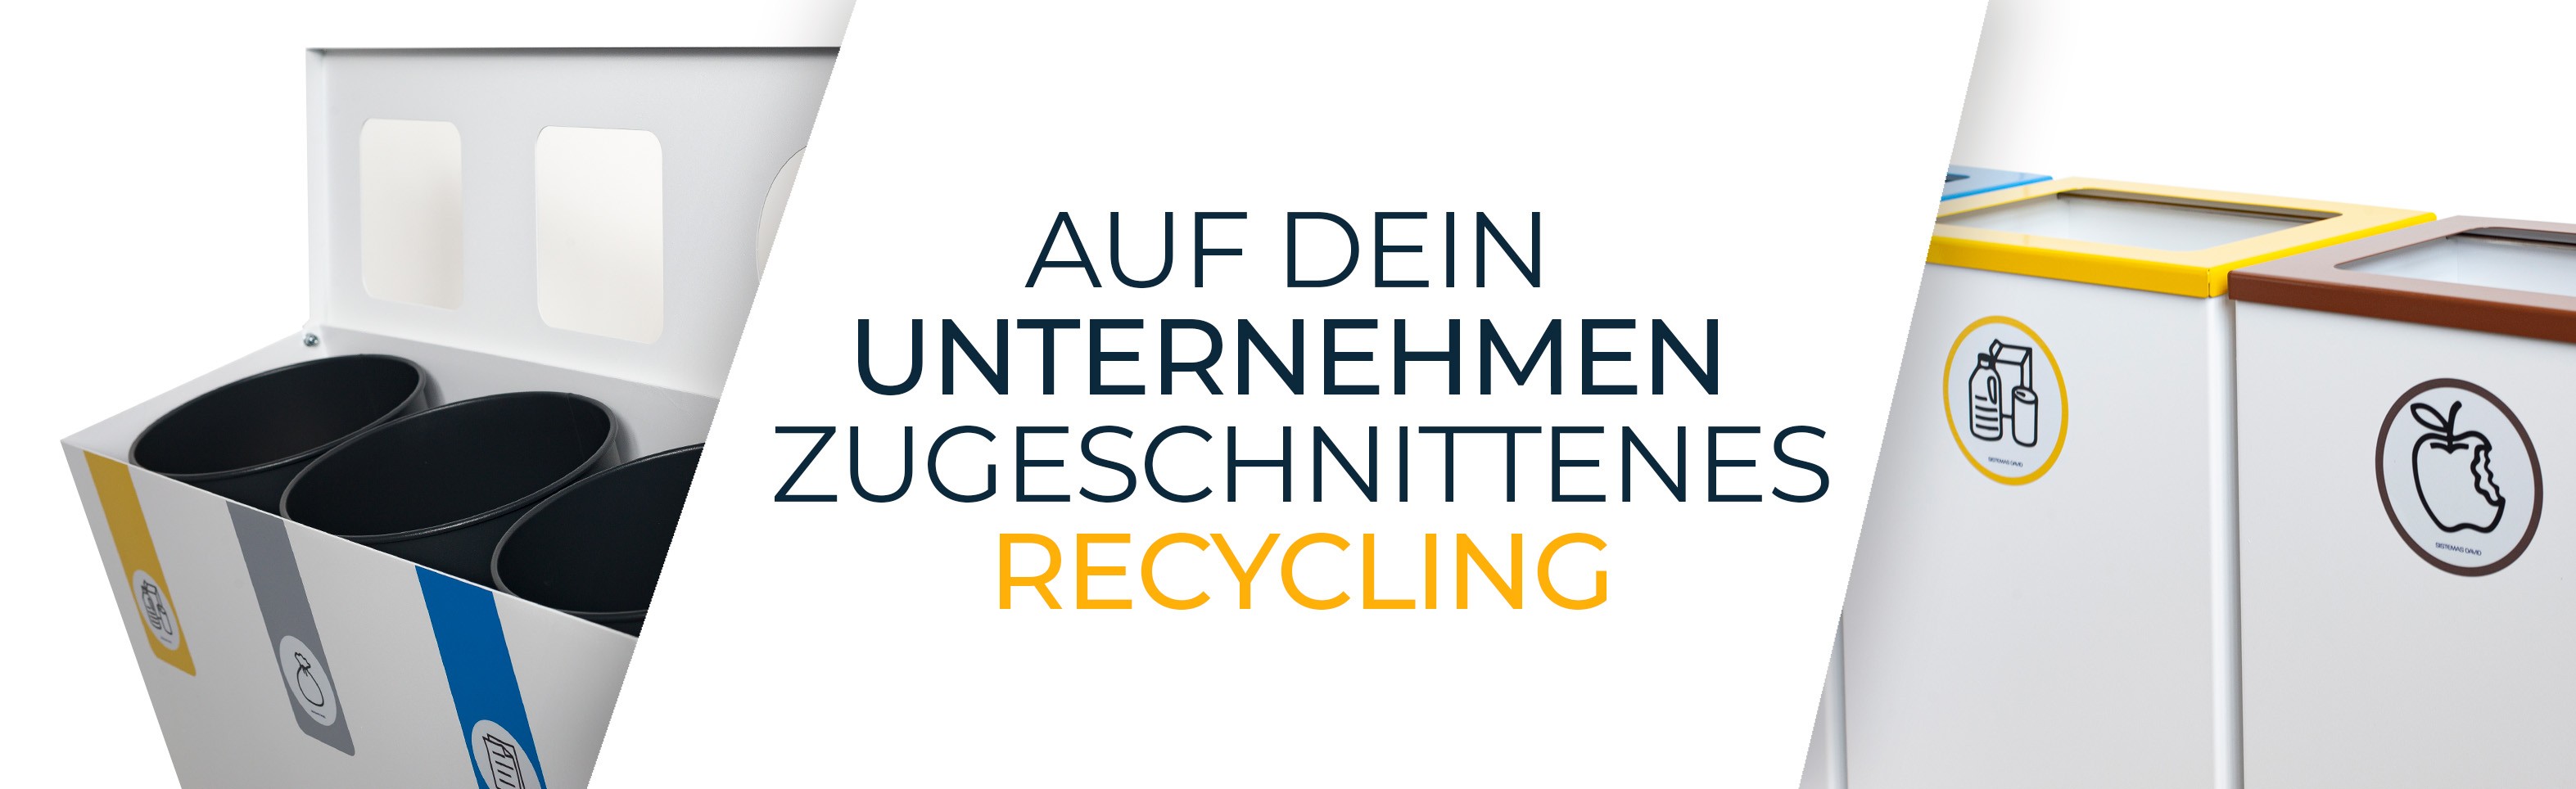 Auf dein Unternehmen zugeschnittenes Recycling